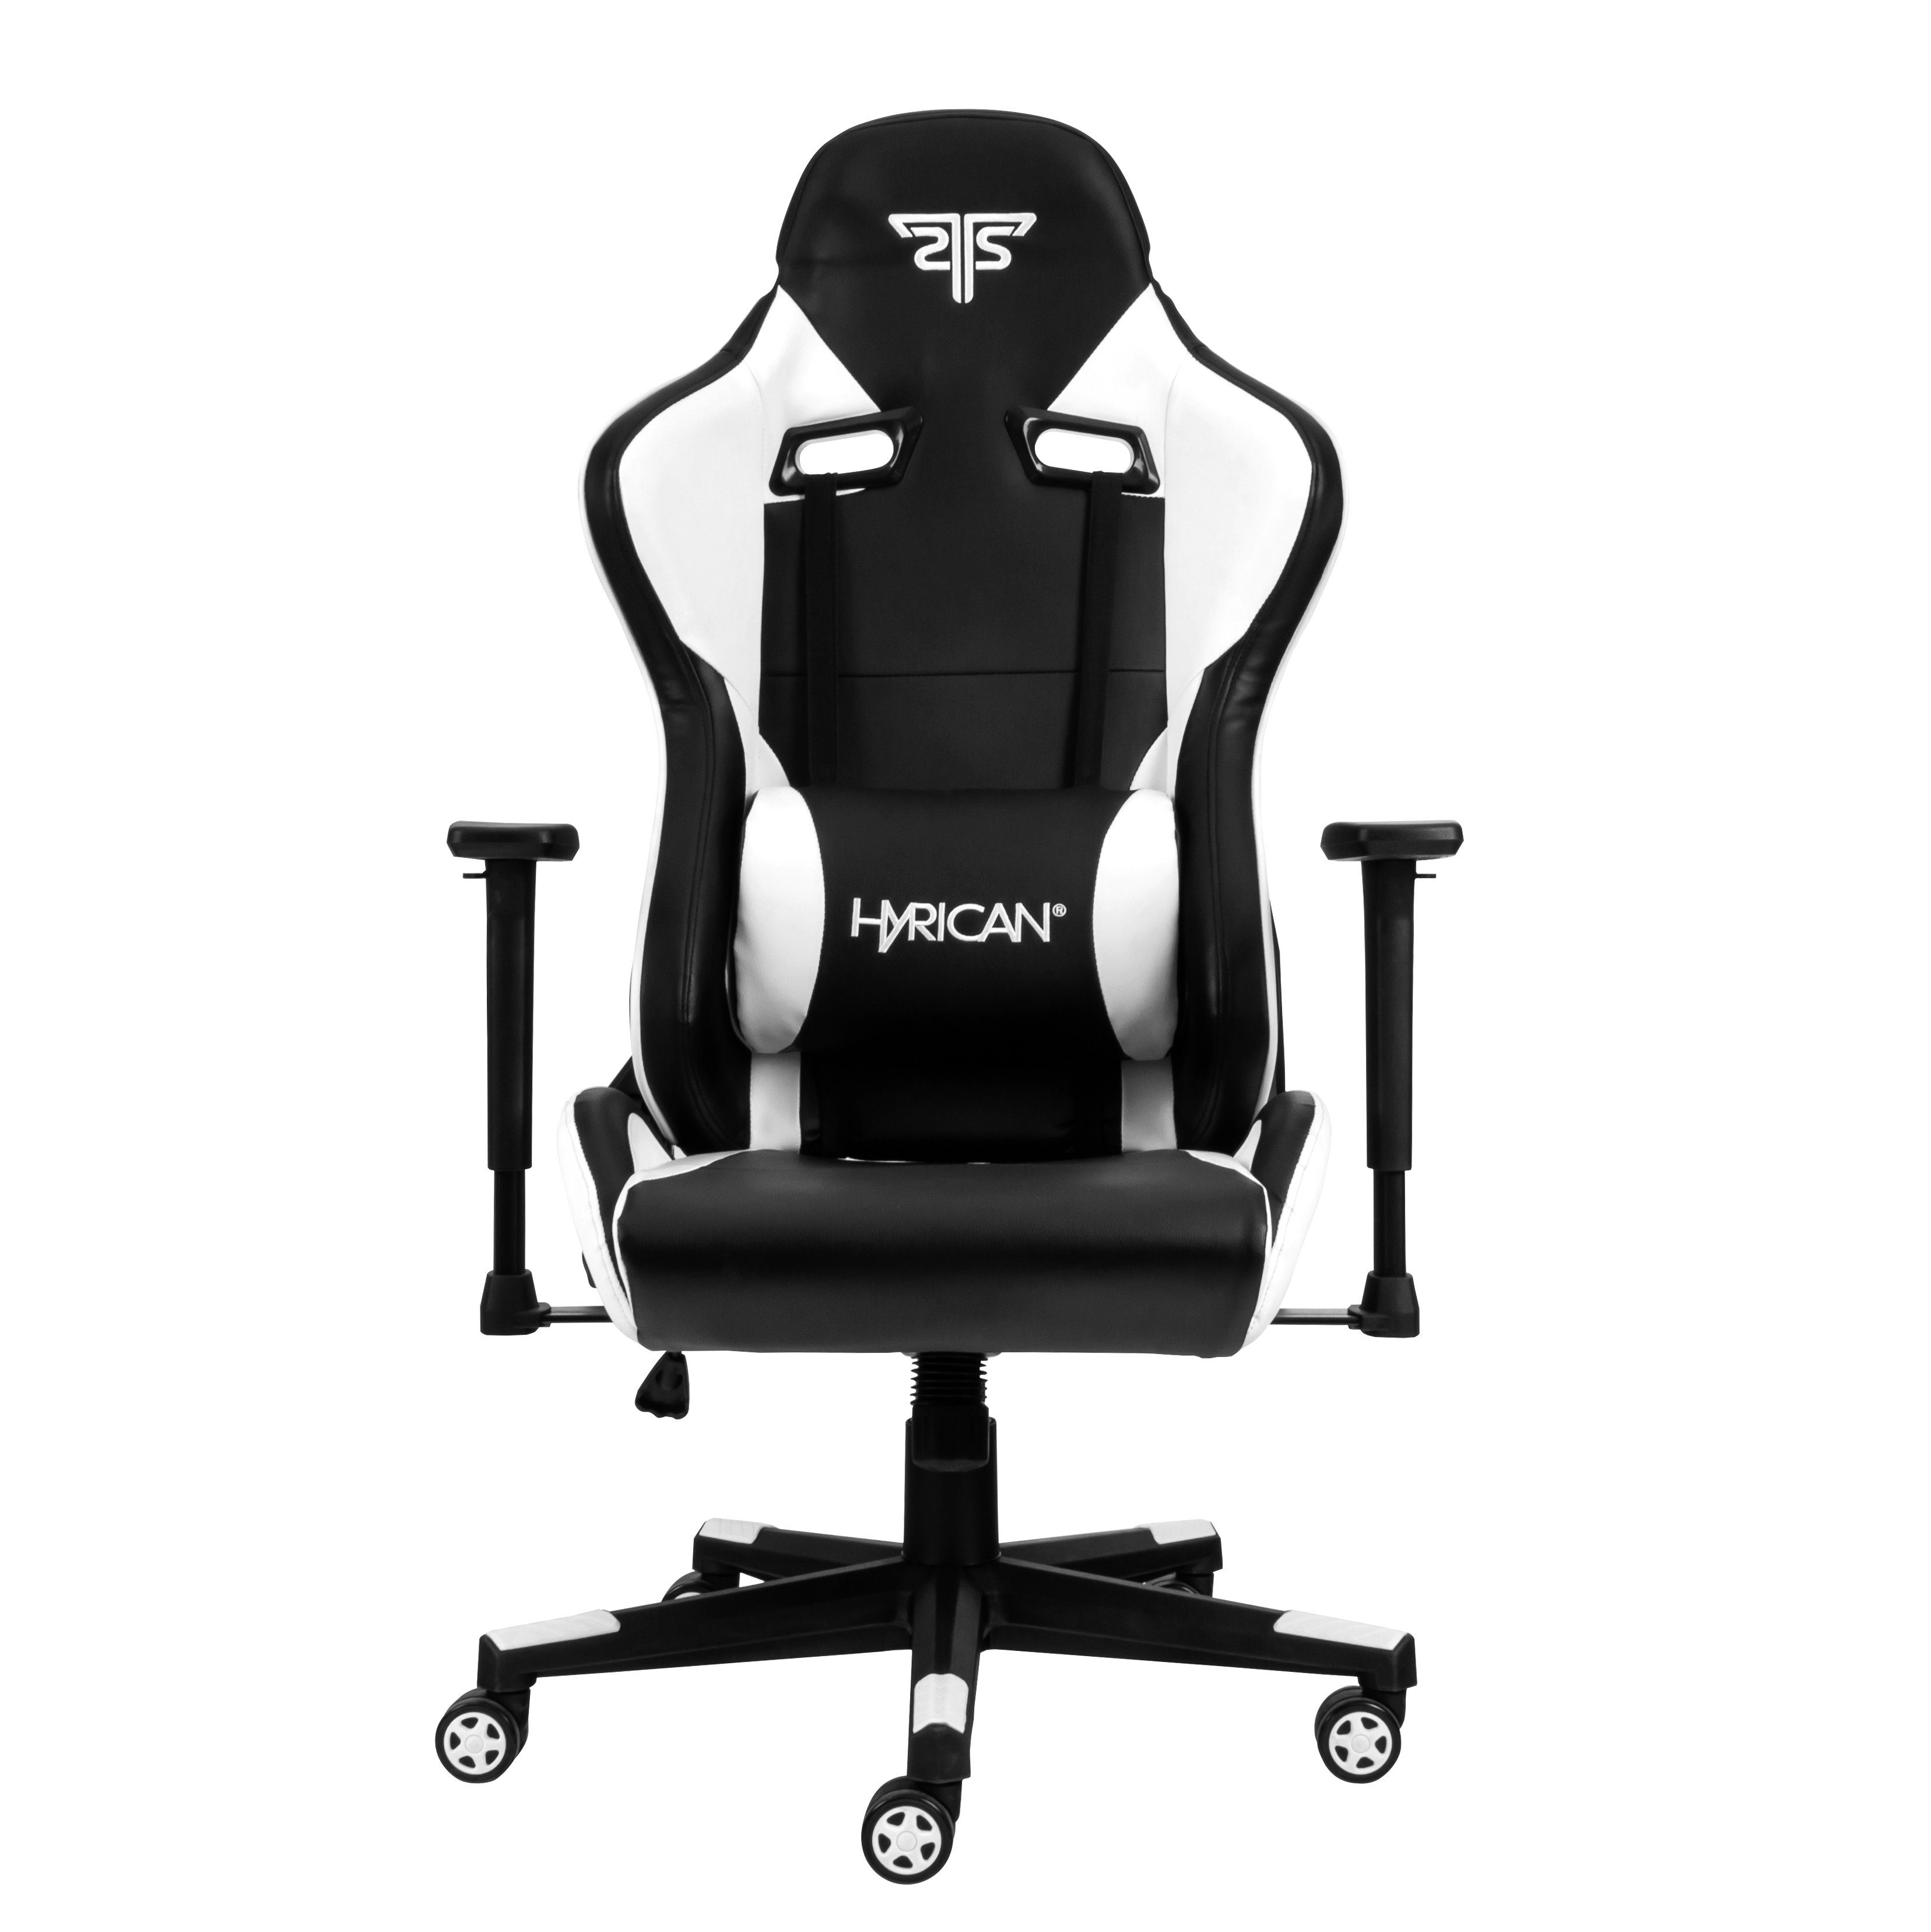 Hyrican Gaming-Stuhl Kunstleder, Tank" für Bürostuhl, geeignet Schreibtischstuhl, Erwachsene "Striker Gamingstuhl, schwarz/weiß, ergonomischer